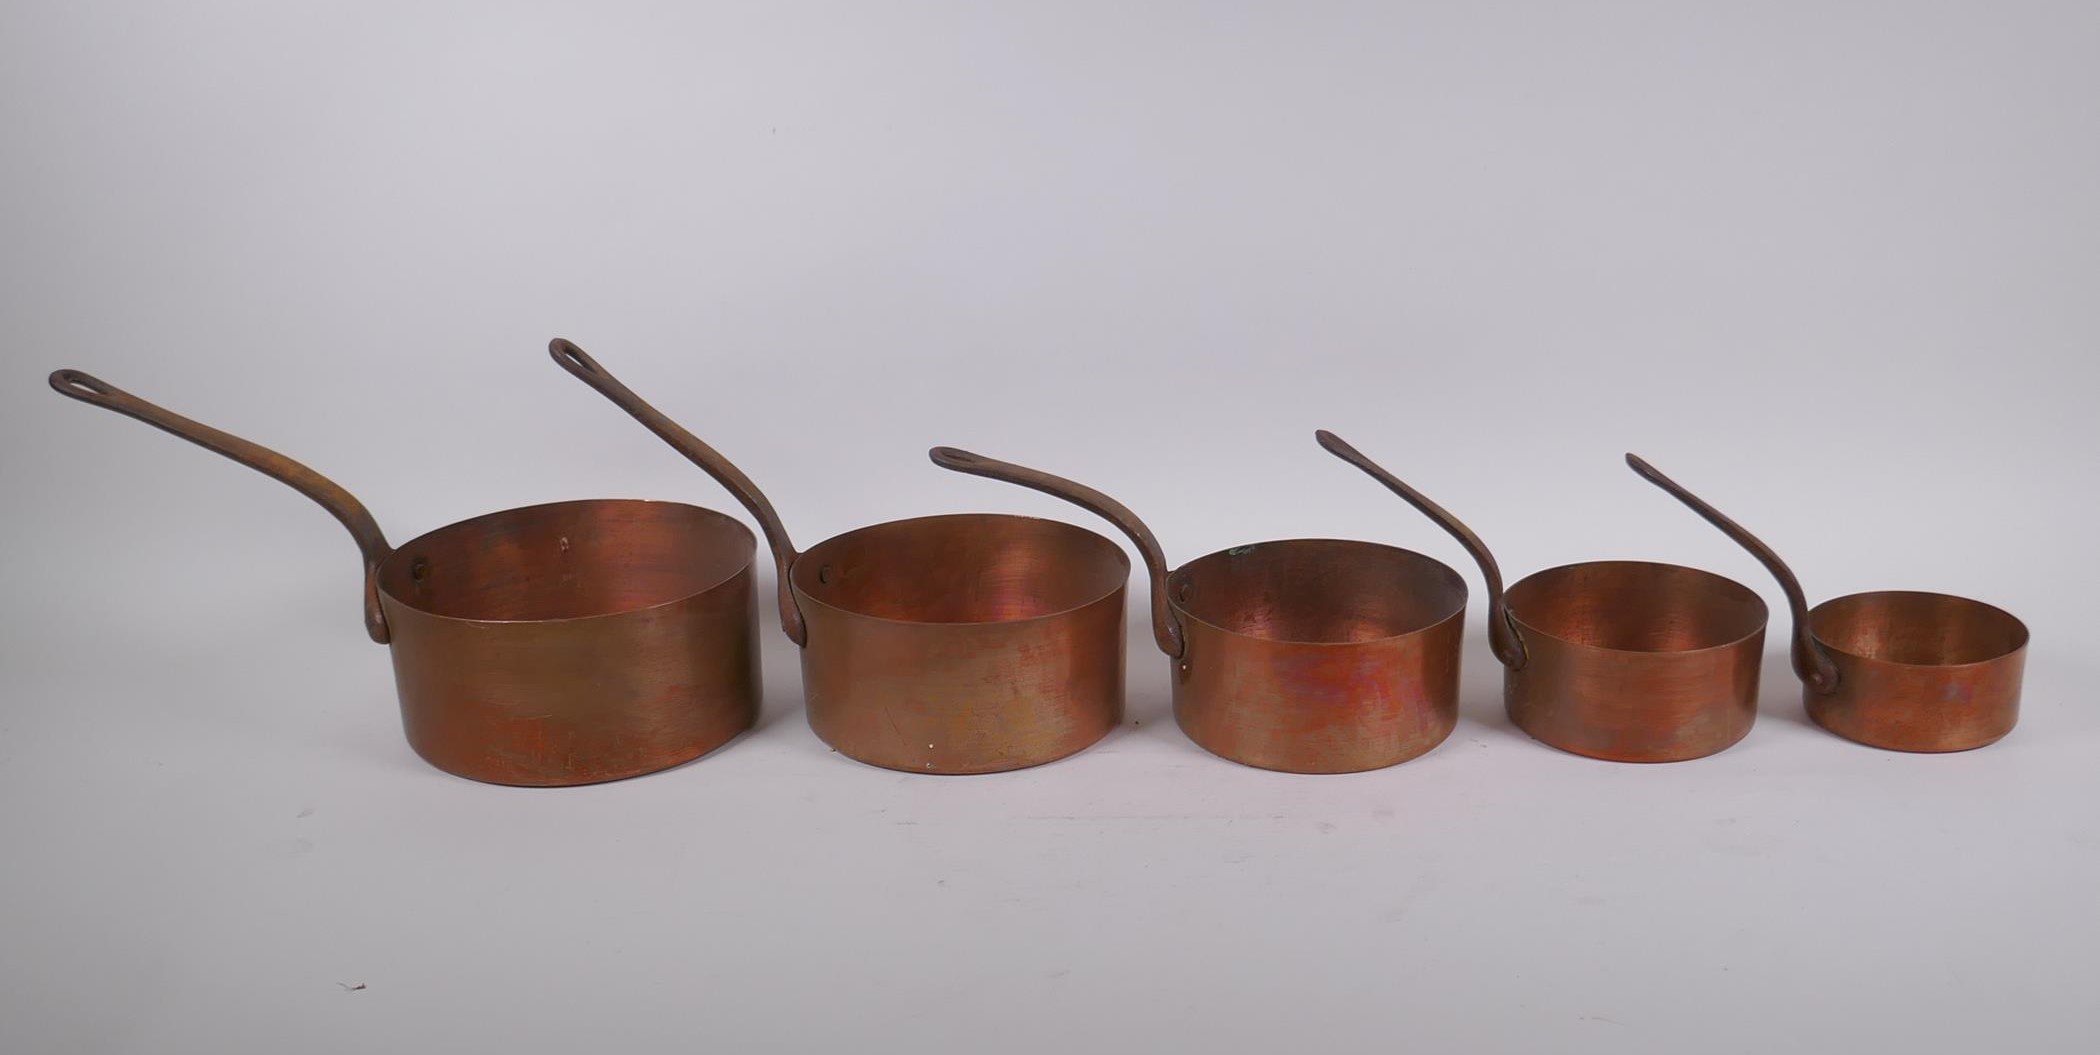 A set of five graduated copper sauce pans, largest 15cm diameter